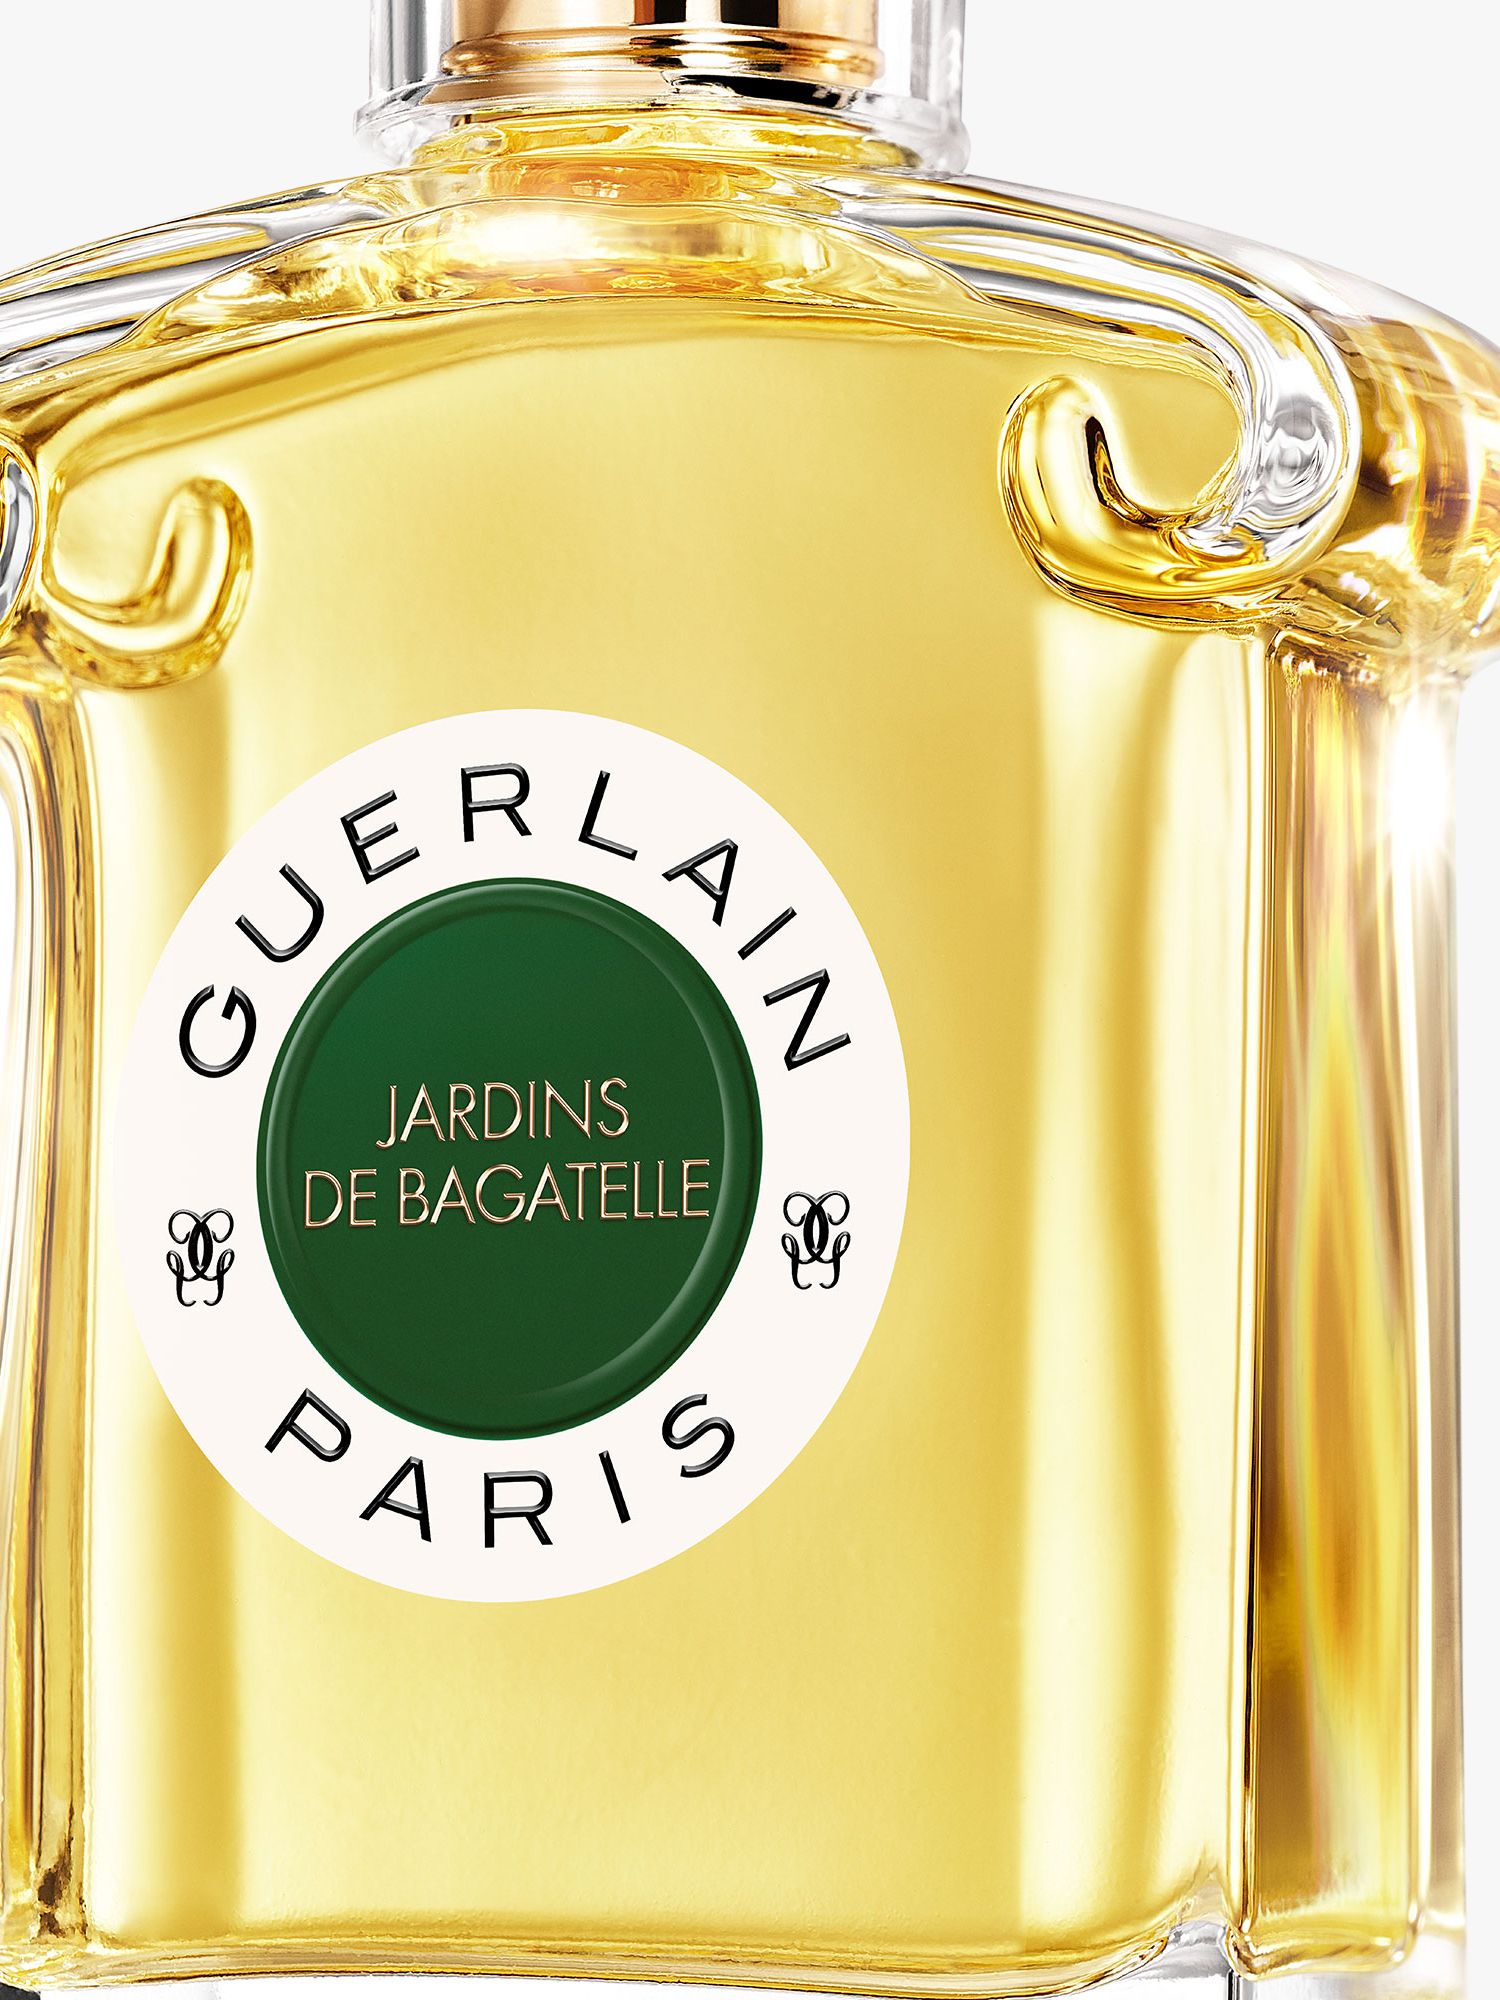 Guerlain Jardins de Bagatelle Eau de Parfum, 75ml 2